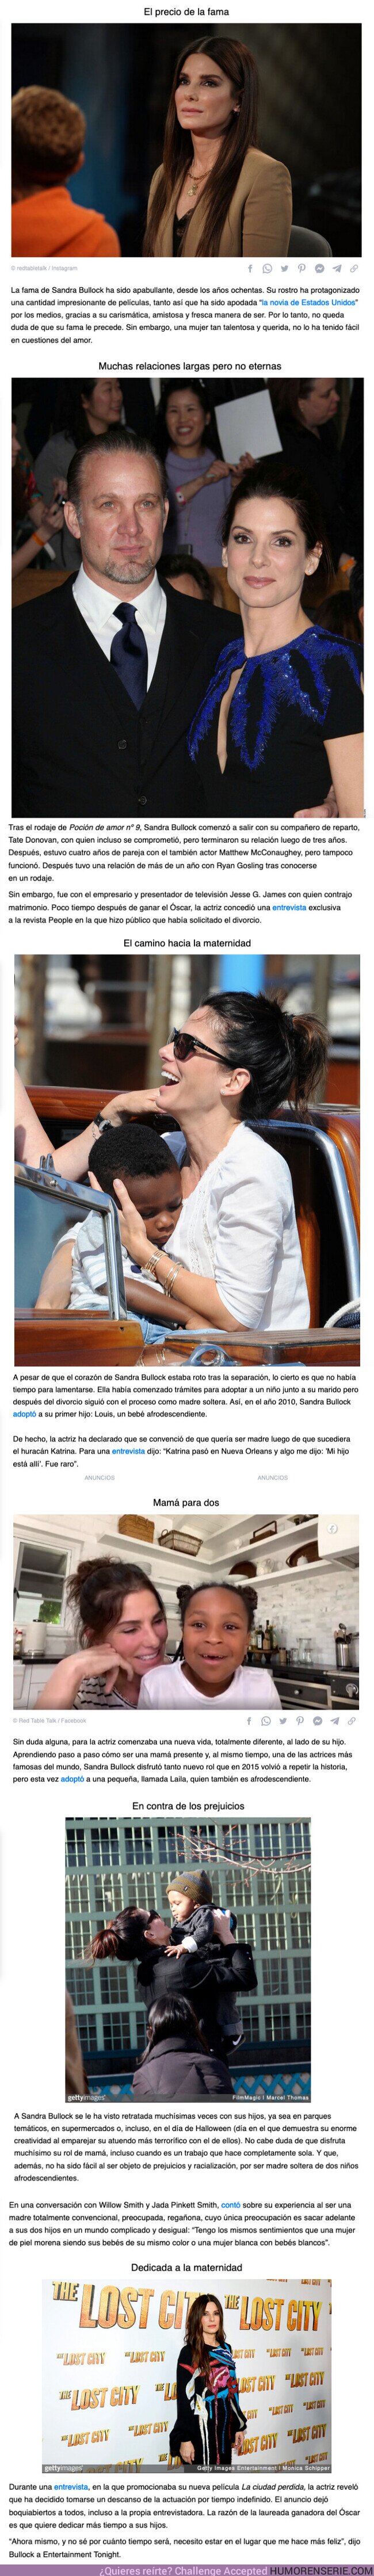 96932 - GALERÍA: Sandra Bullock demuestra que el amor de madre no sabe de diferencias